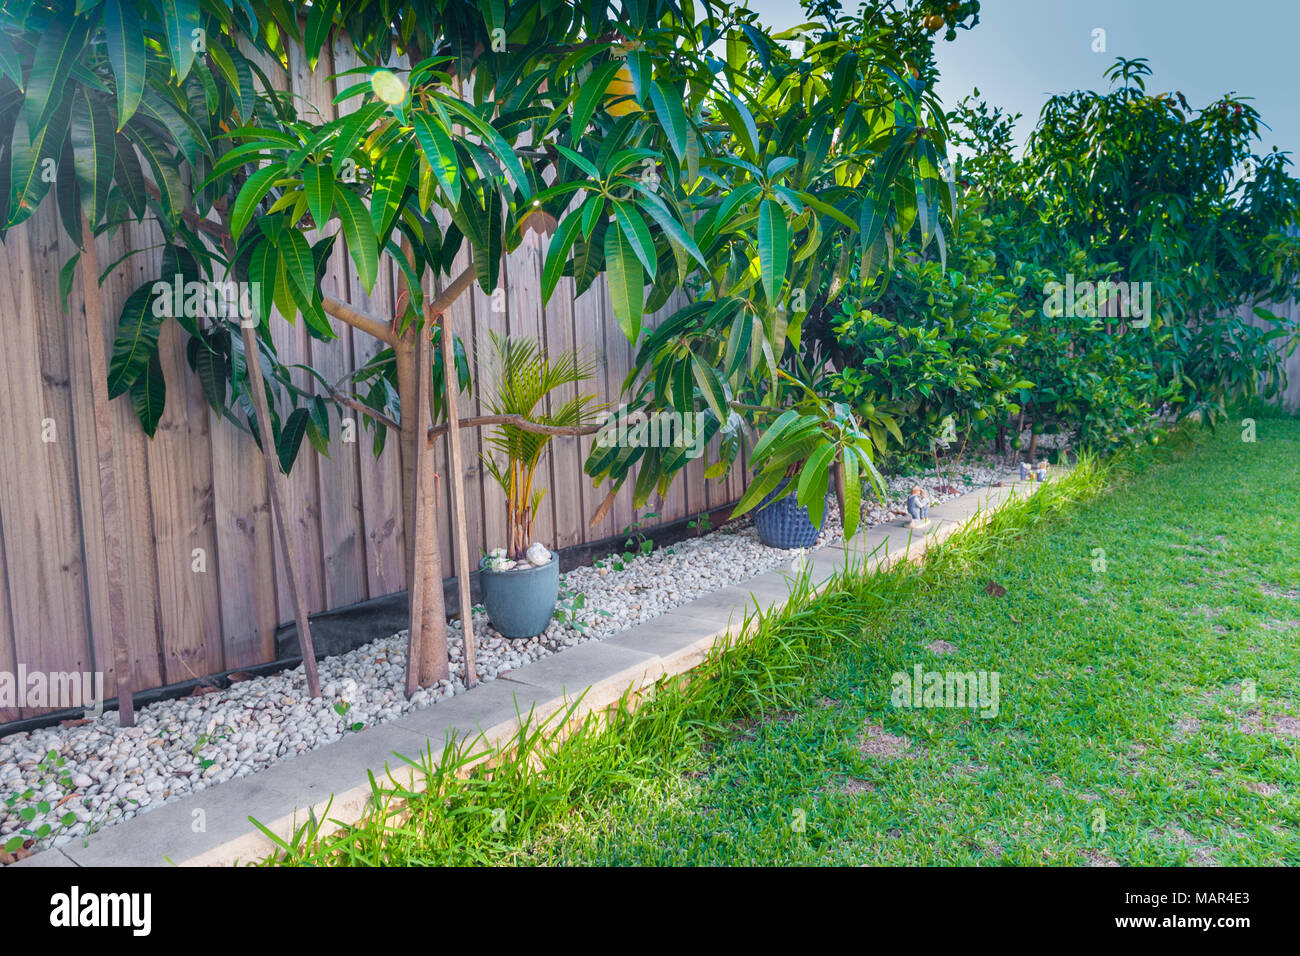 Einheimische australische Garten mit Mango (Mangifera indica), Orange (Citrus sinsensis) und Zitrone (Citrus limon) Bäume. POTTS HILL. NSW. Australien Stockfoto